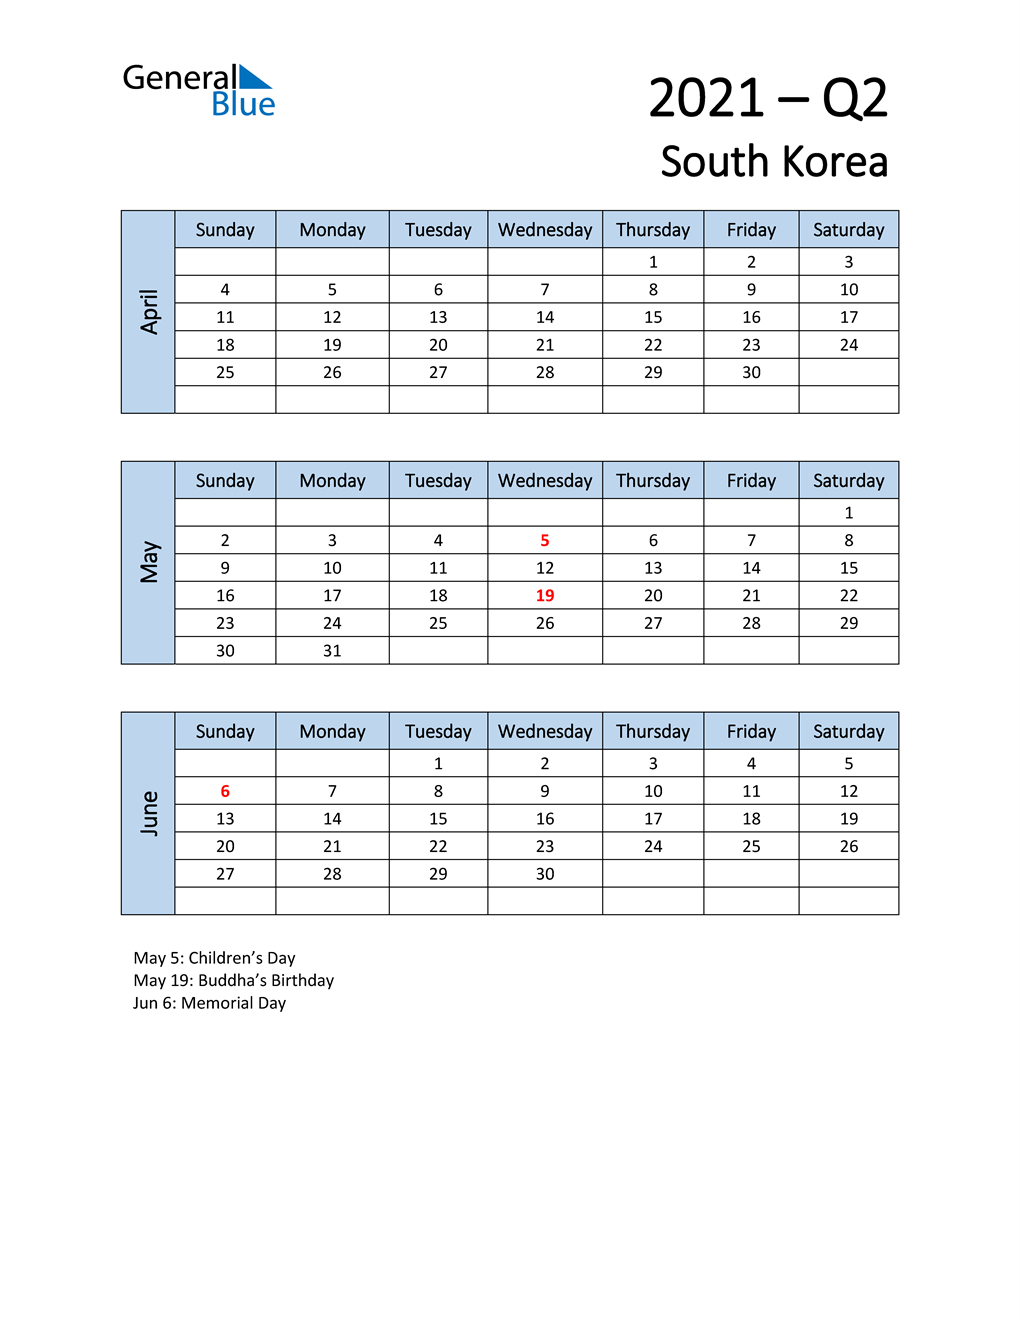  Free Q2 2021 Calendar for South Korea